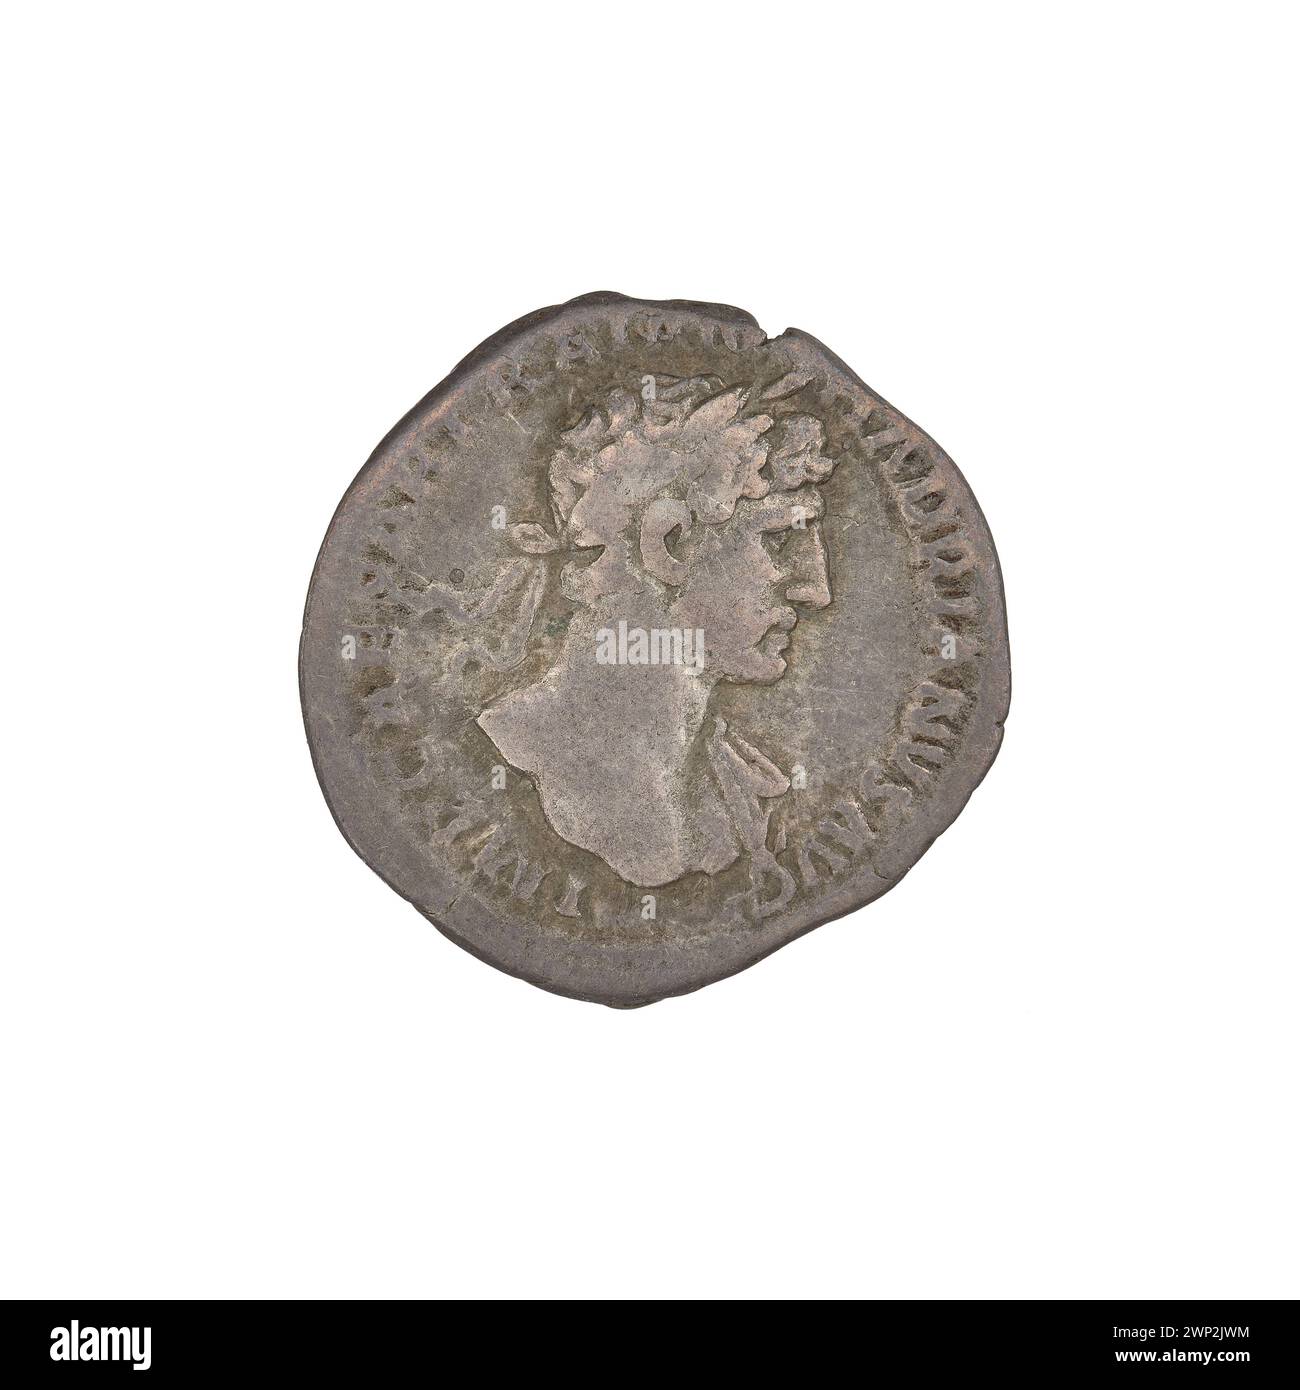 denarius; Hadrian (76-138; Roman emperor 117-138); 118 (114-00-00-117-00-00);Iustitia (personification), heads, plates, laurel wreaths Stock Photo